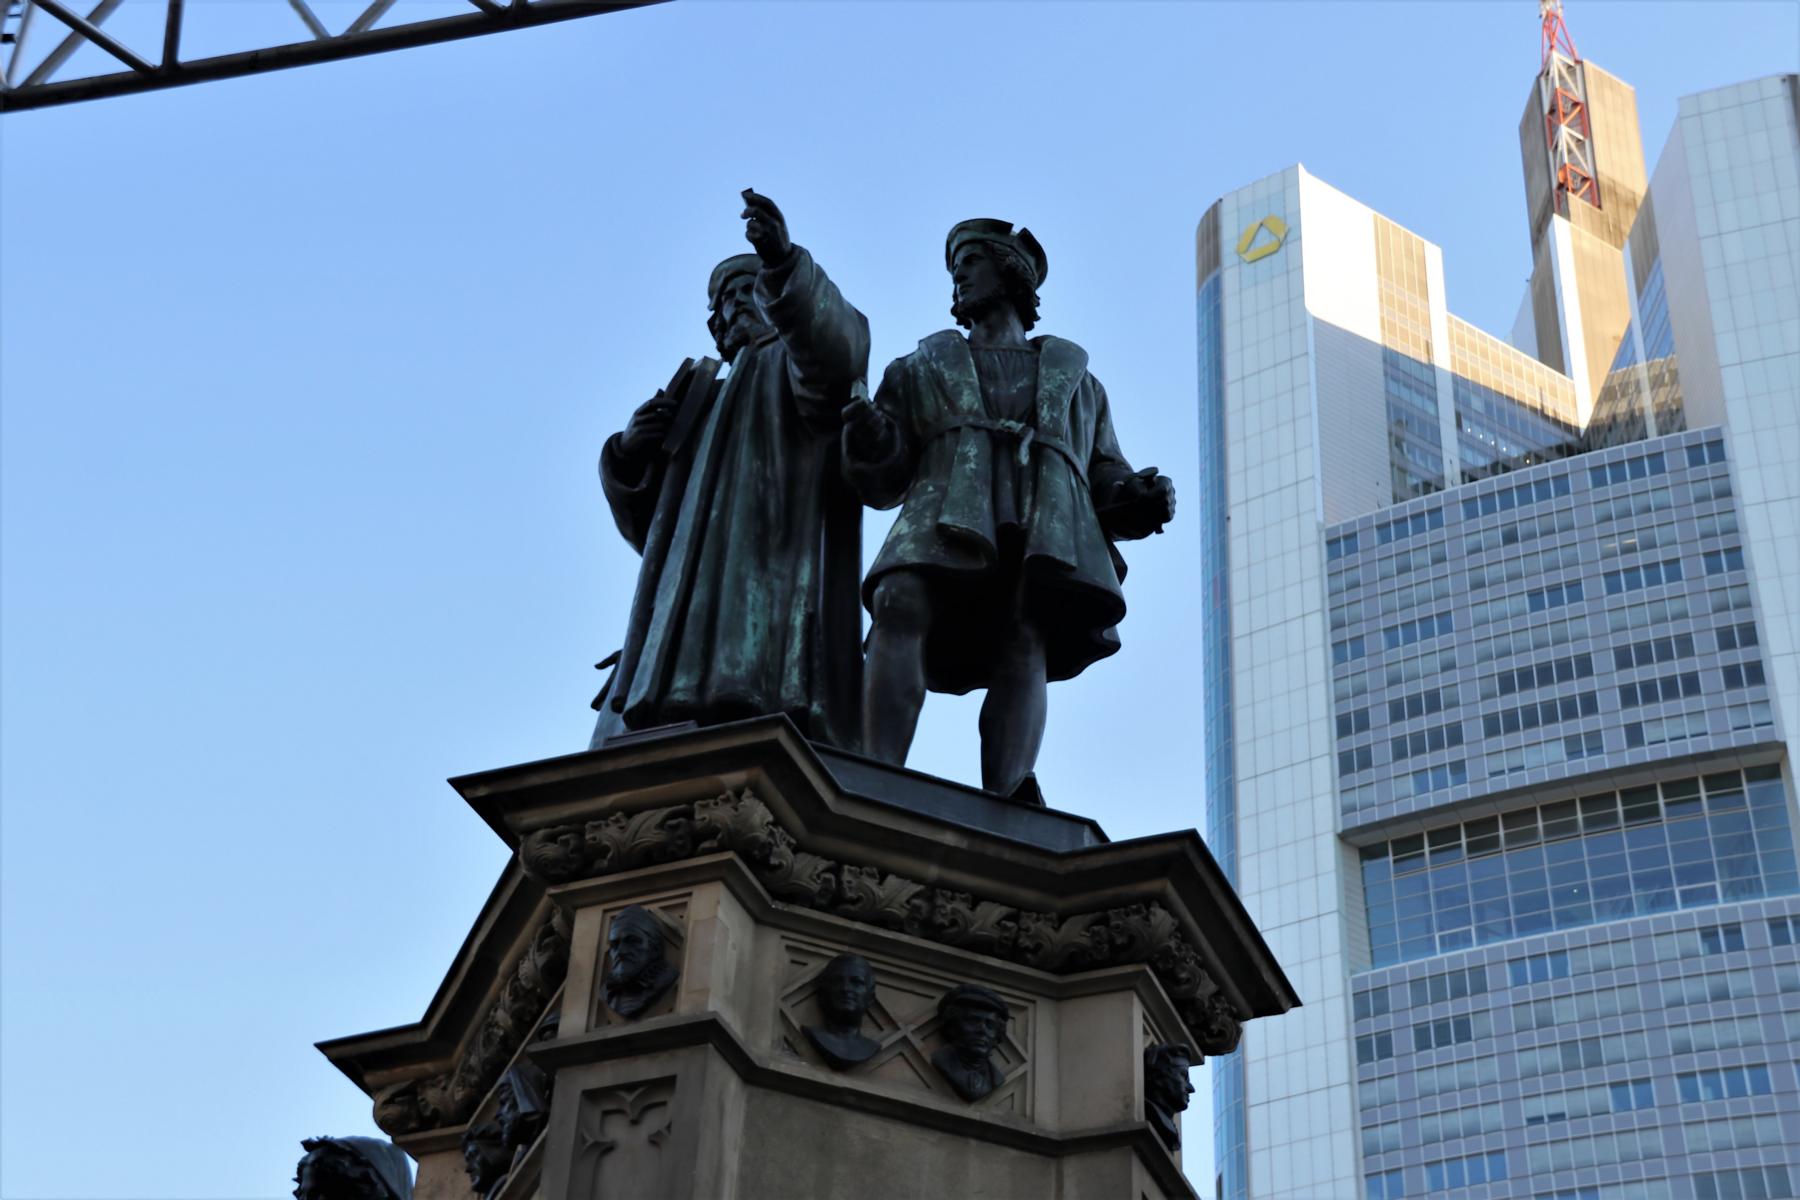 Rossmarkt, Gutenberg-Denkmal. < >< > 
Frankfurt, die lebenswerteste */ liebenswerteste* Stadt in Deutschland. Was sonst?  < >
* The Economist / internationale Wochenzeitschrift, London Juni 2022< >
* ichliebefrankfurt.de / Frankfurt< >